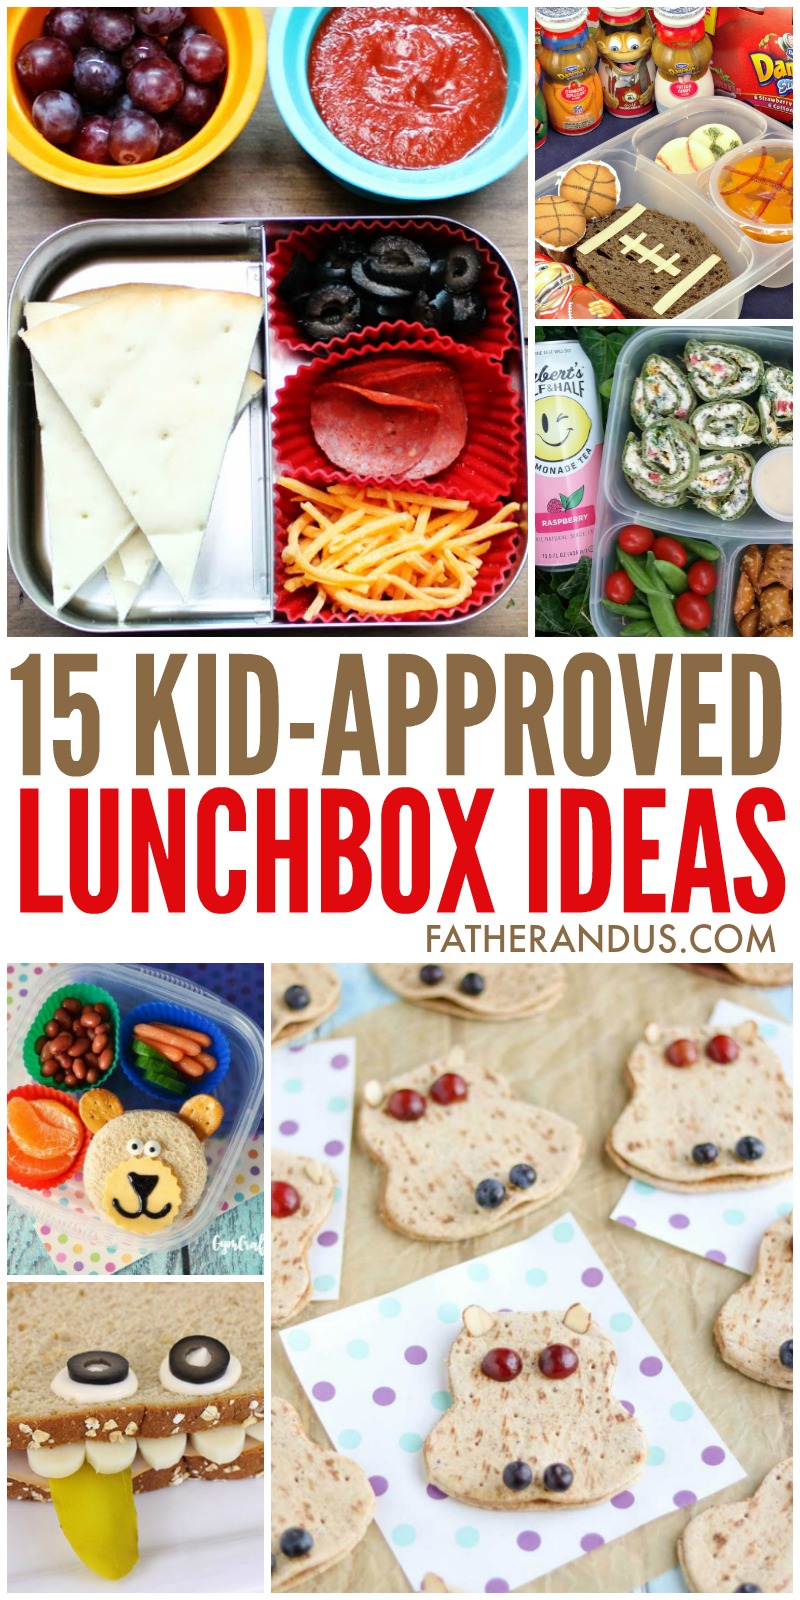 Easy Lunchbox Ideas